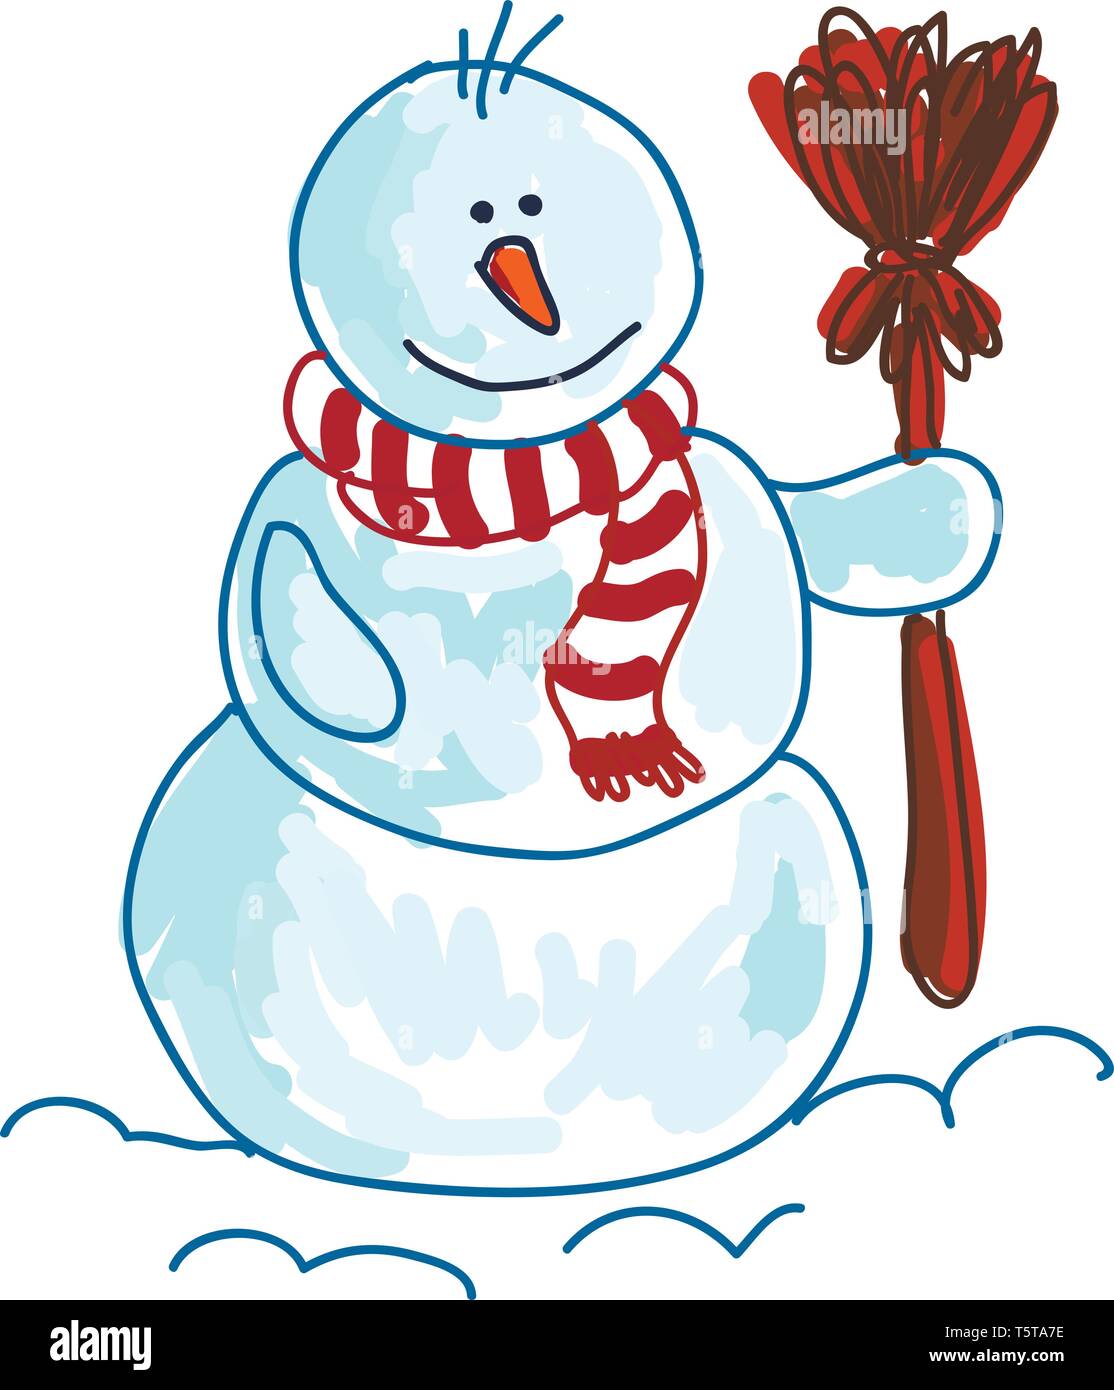 Un dibujo de un muñeco de nieve vistiendo un silenciador de rayas rojas y  blancas y sosteniendo una escoba en una mano de color rojo el color de  dibujo o ilustración vectorial